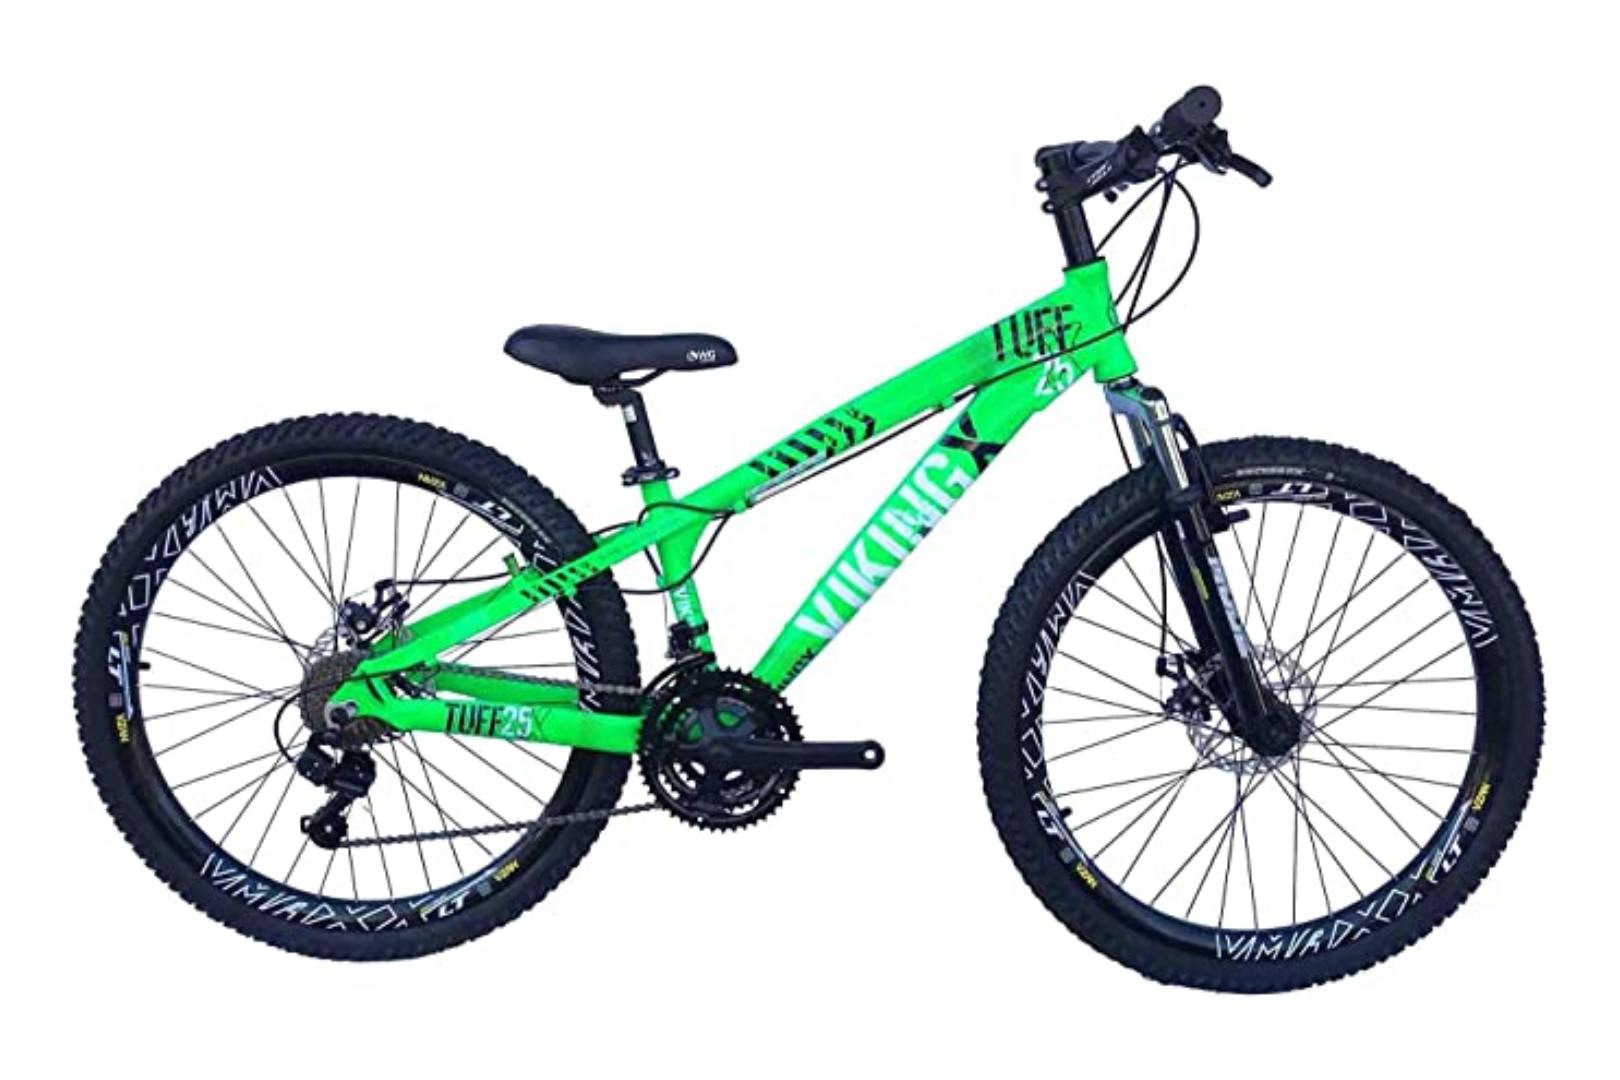 Bicicleta Viking X TUFF25 Freeride Aro 26 Freio a Disco 21 Velocidades Cambios Shimano Verde Neon Viking